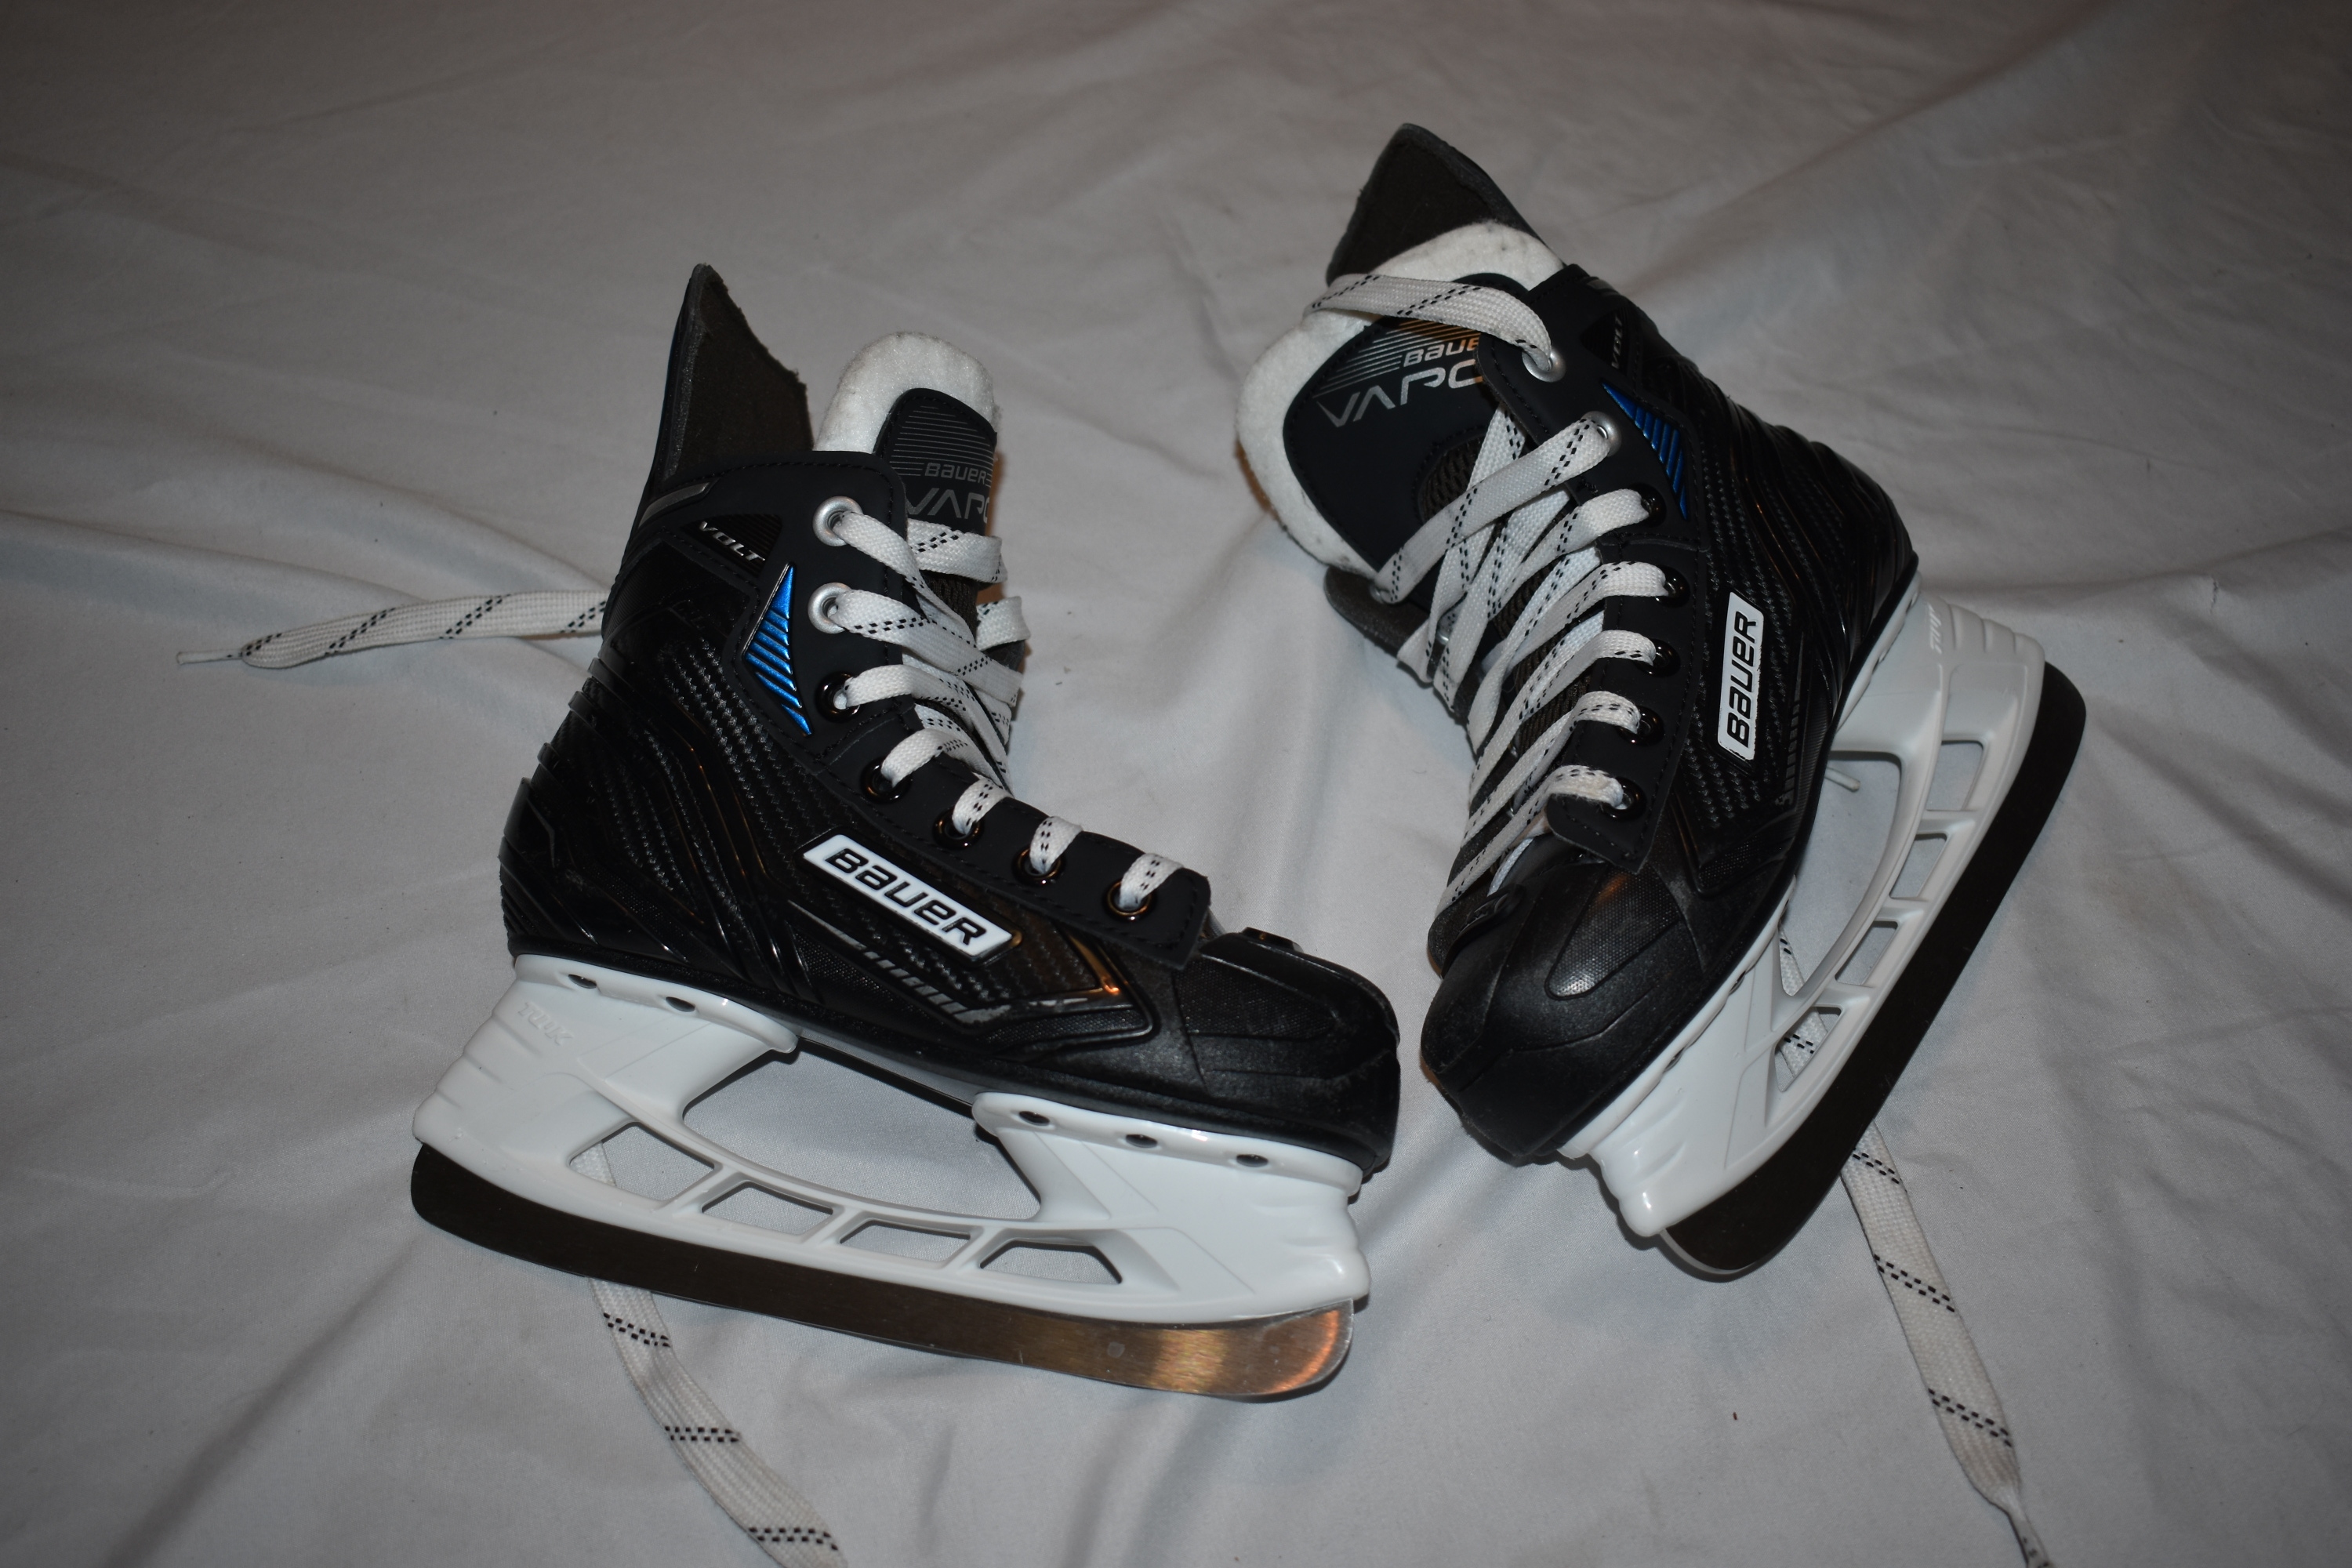 Bauer Vapor VOLT Hockey Skates, Size 13 - Top Condition!